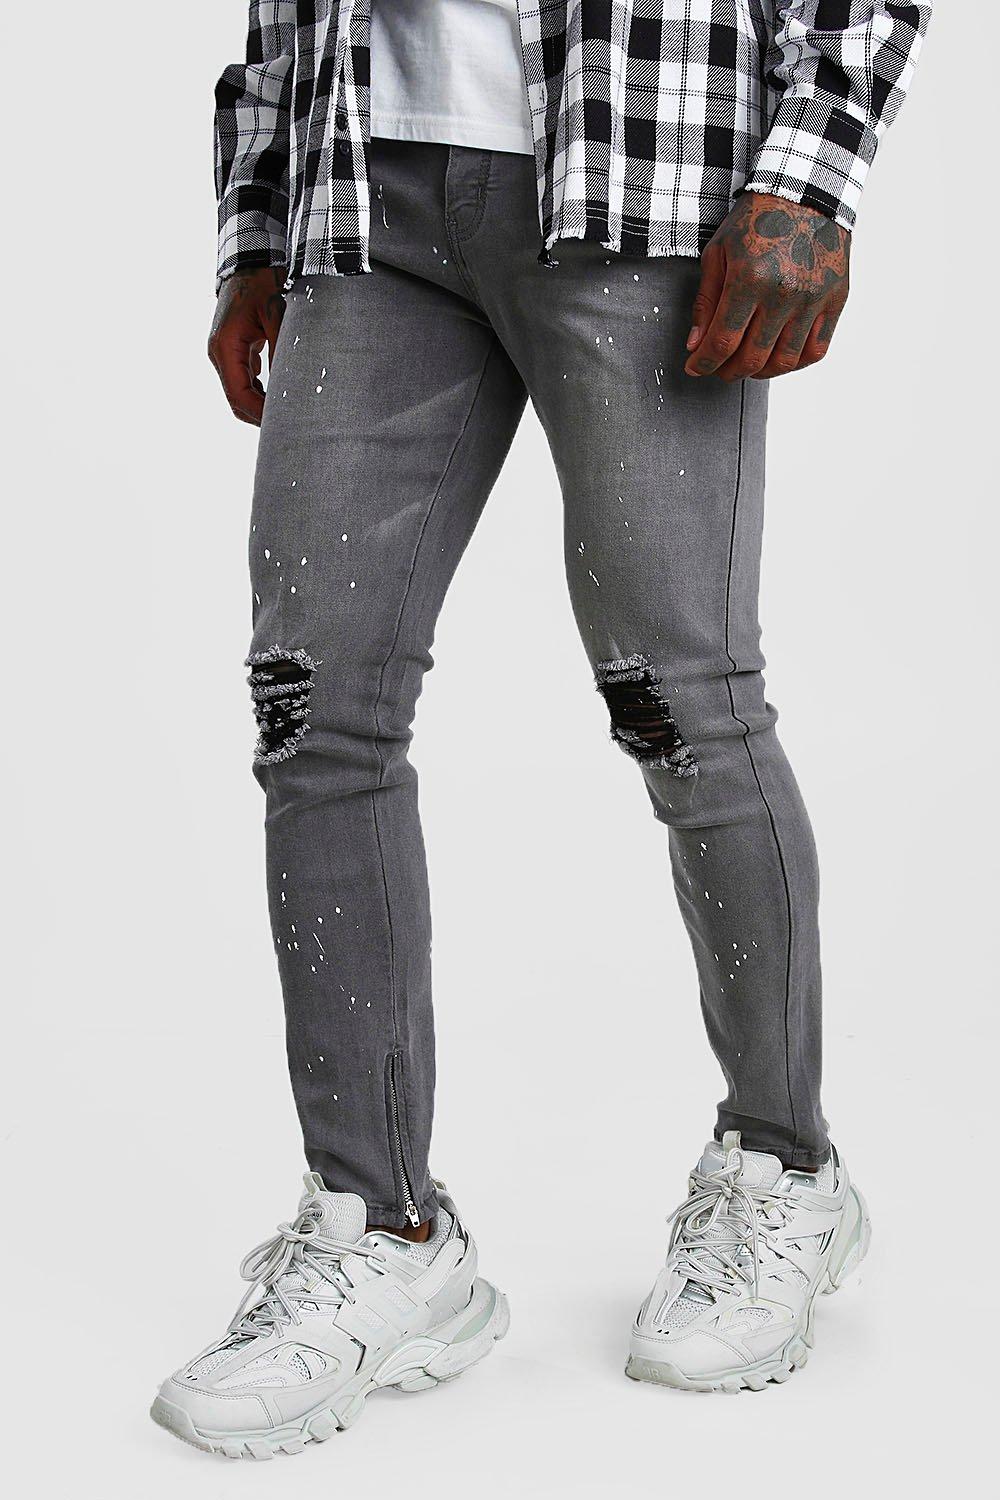 grey paint jeans